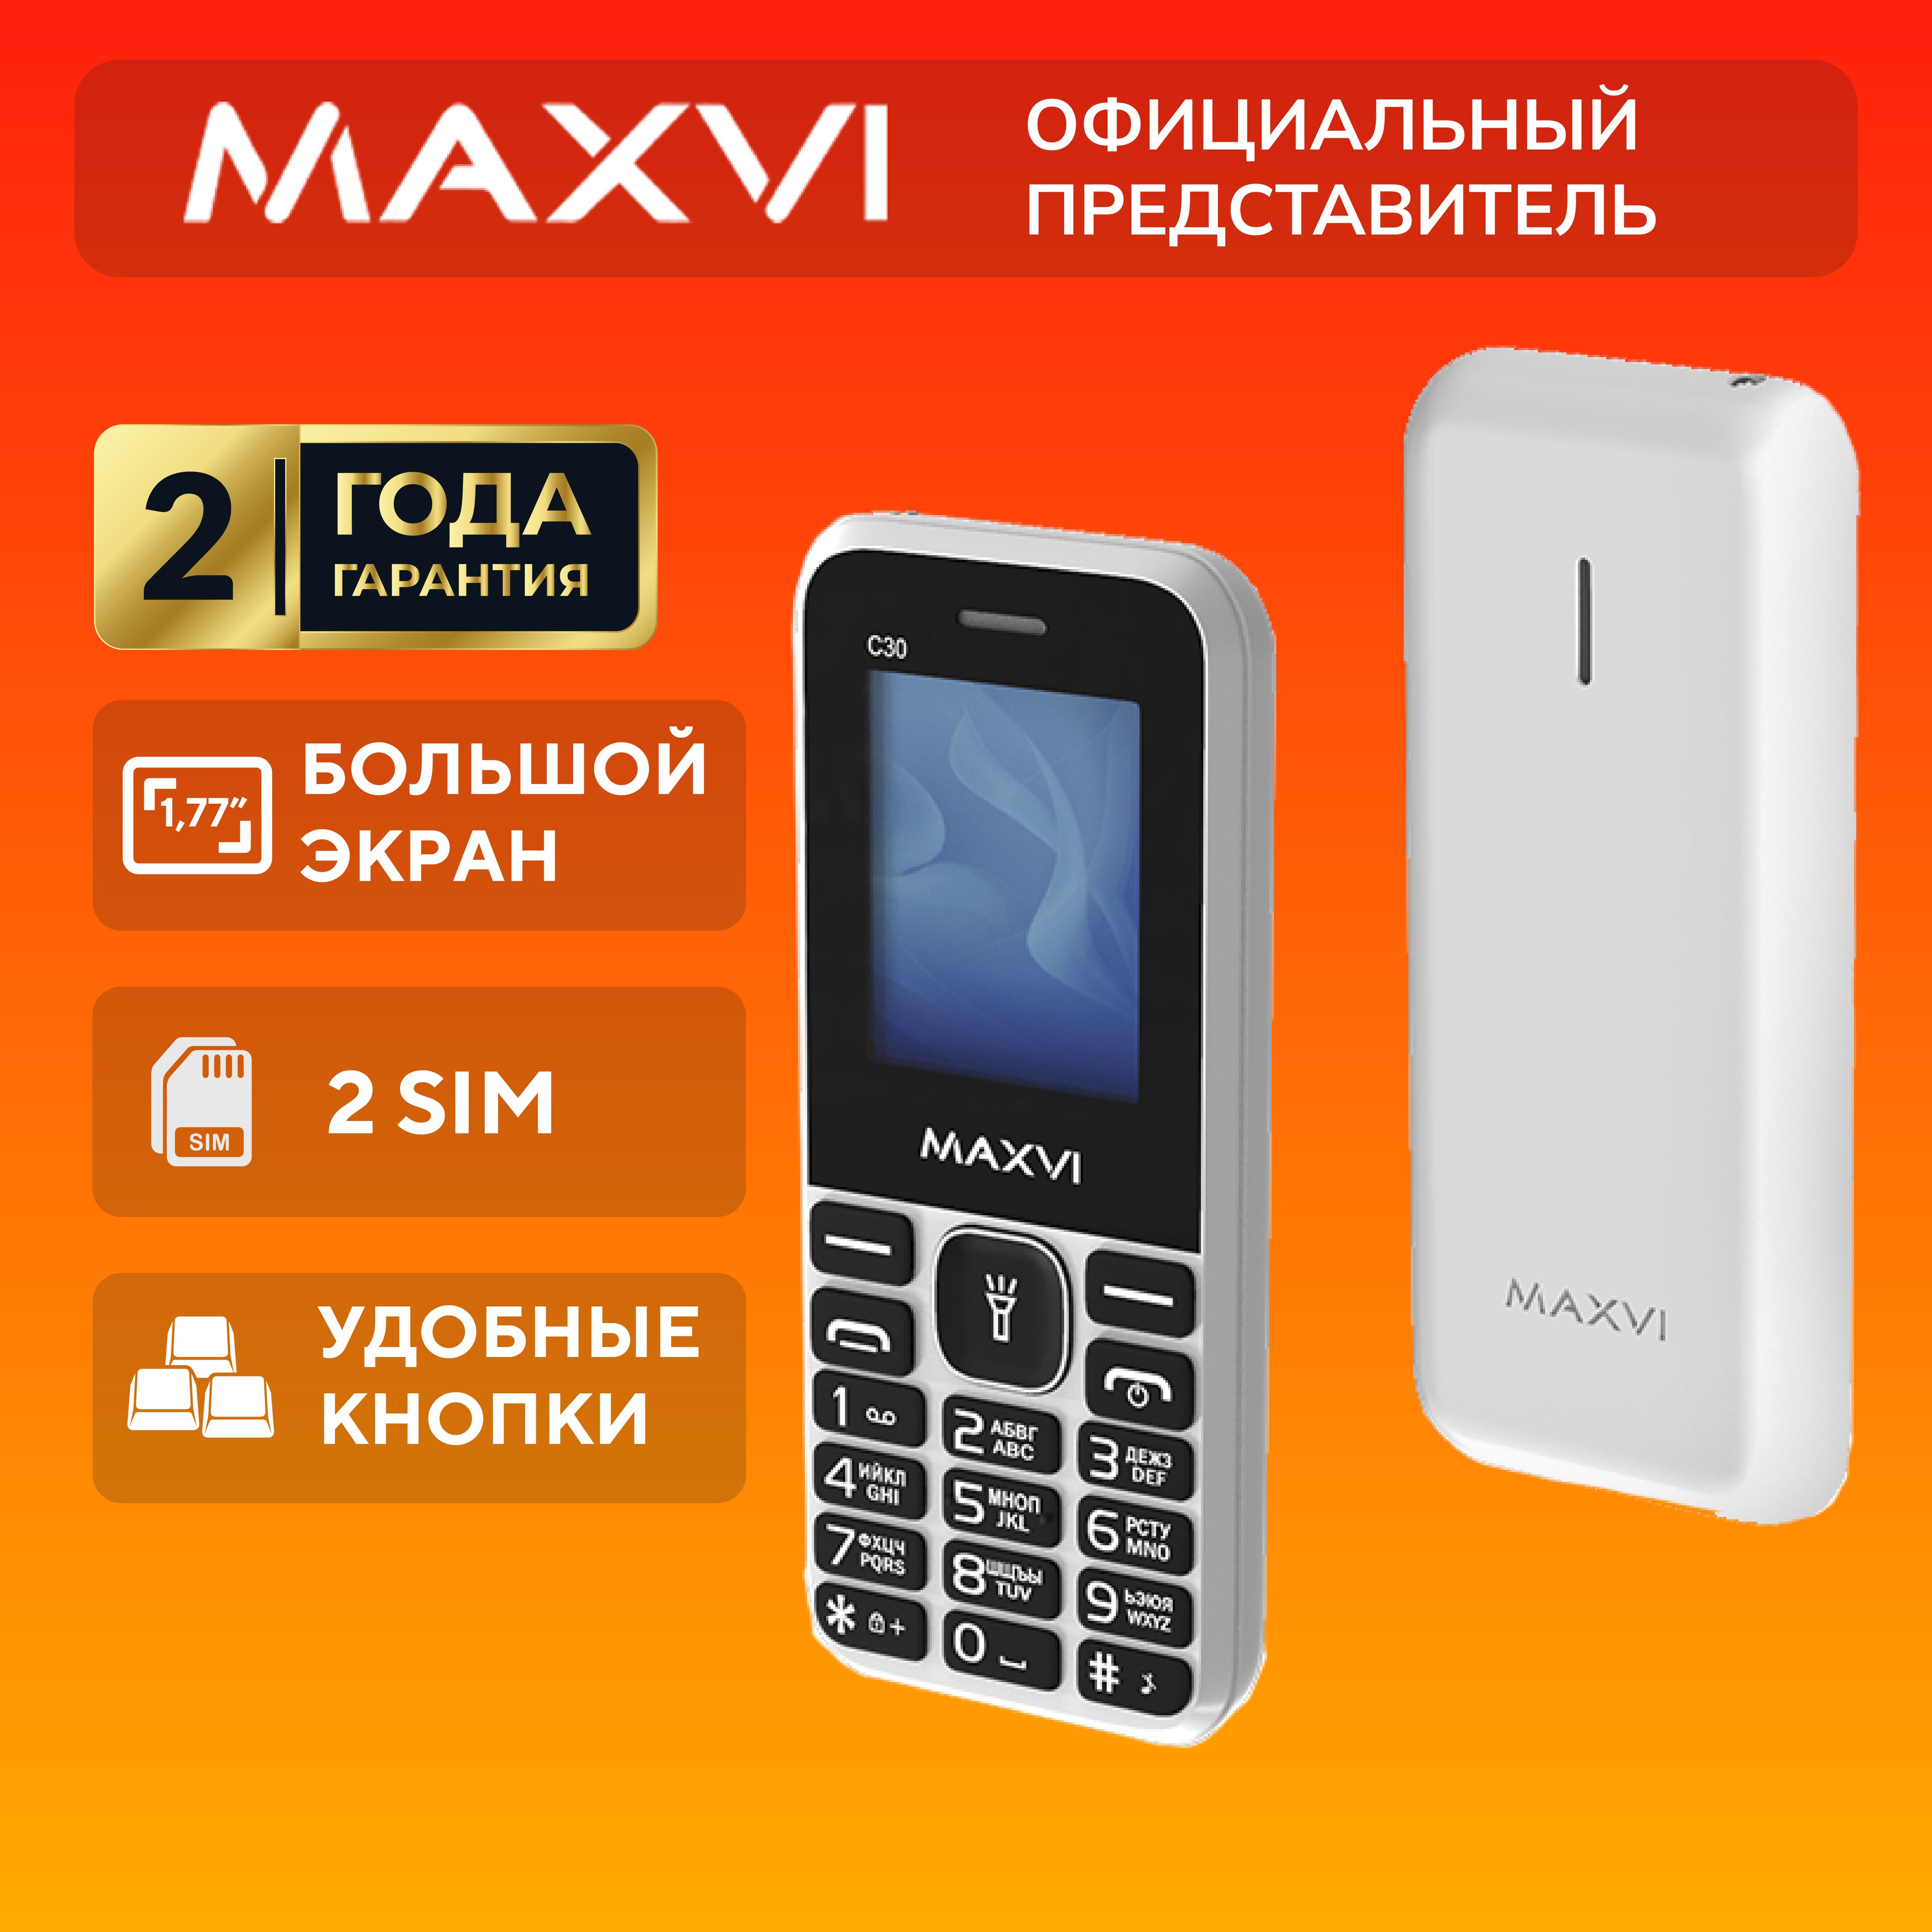 Телефонкнопочныймобильныйбезкамеры,MaxviC30,белый